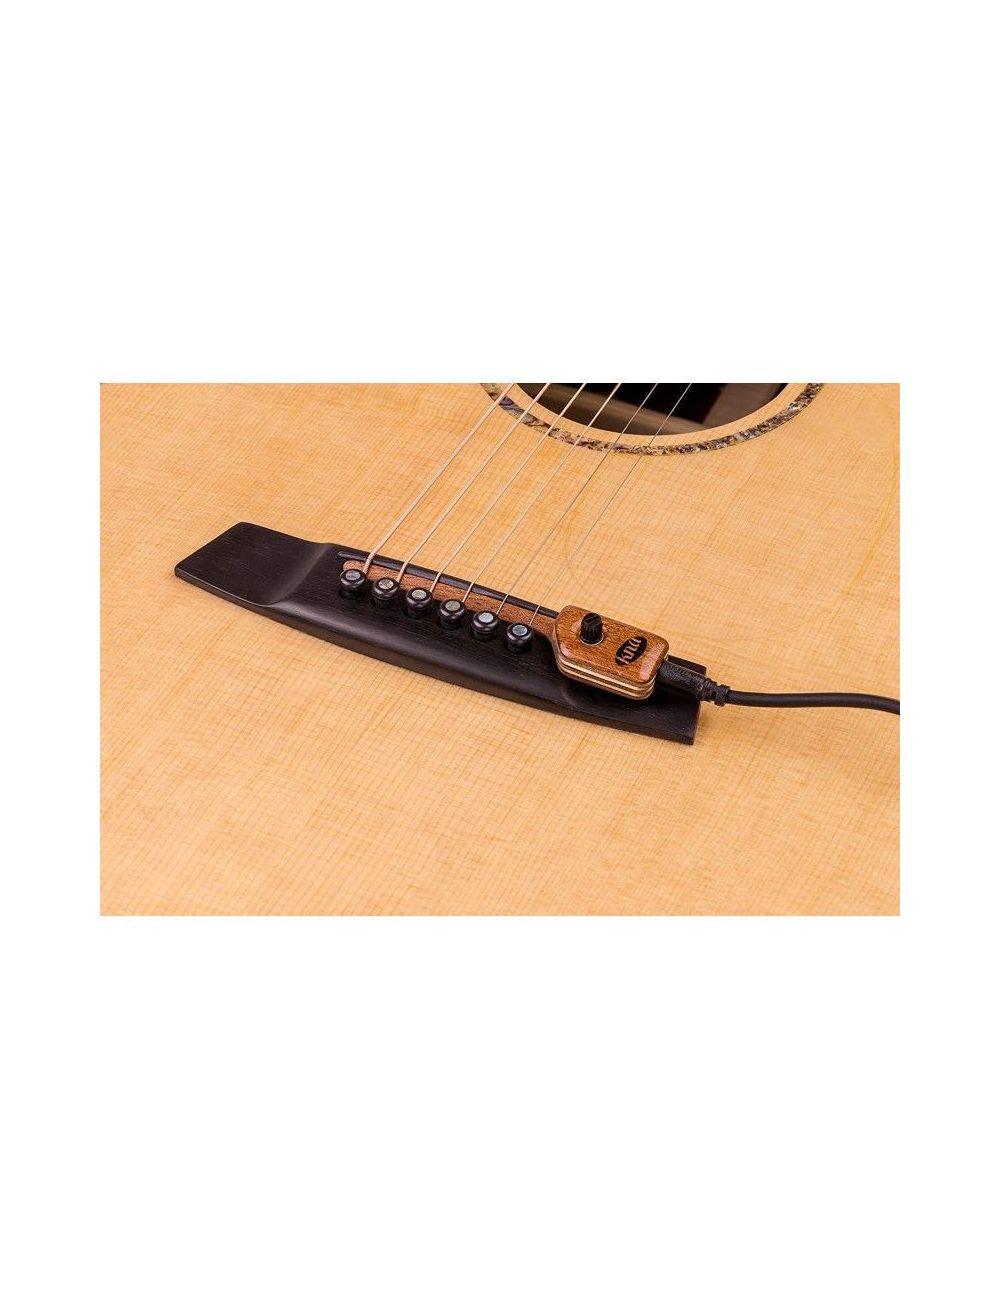 KNA SG-2 Micro piézo-électrique pour guitare acoustique avec contrôle du volume